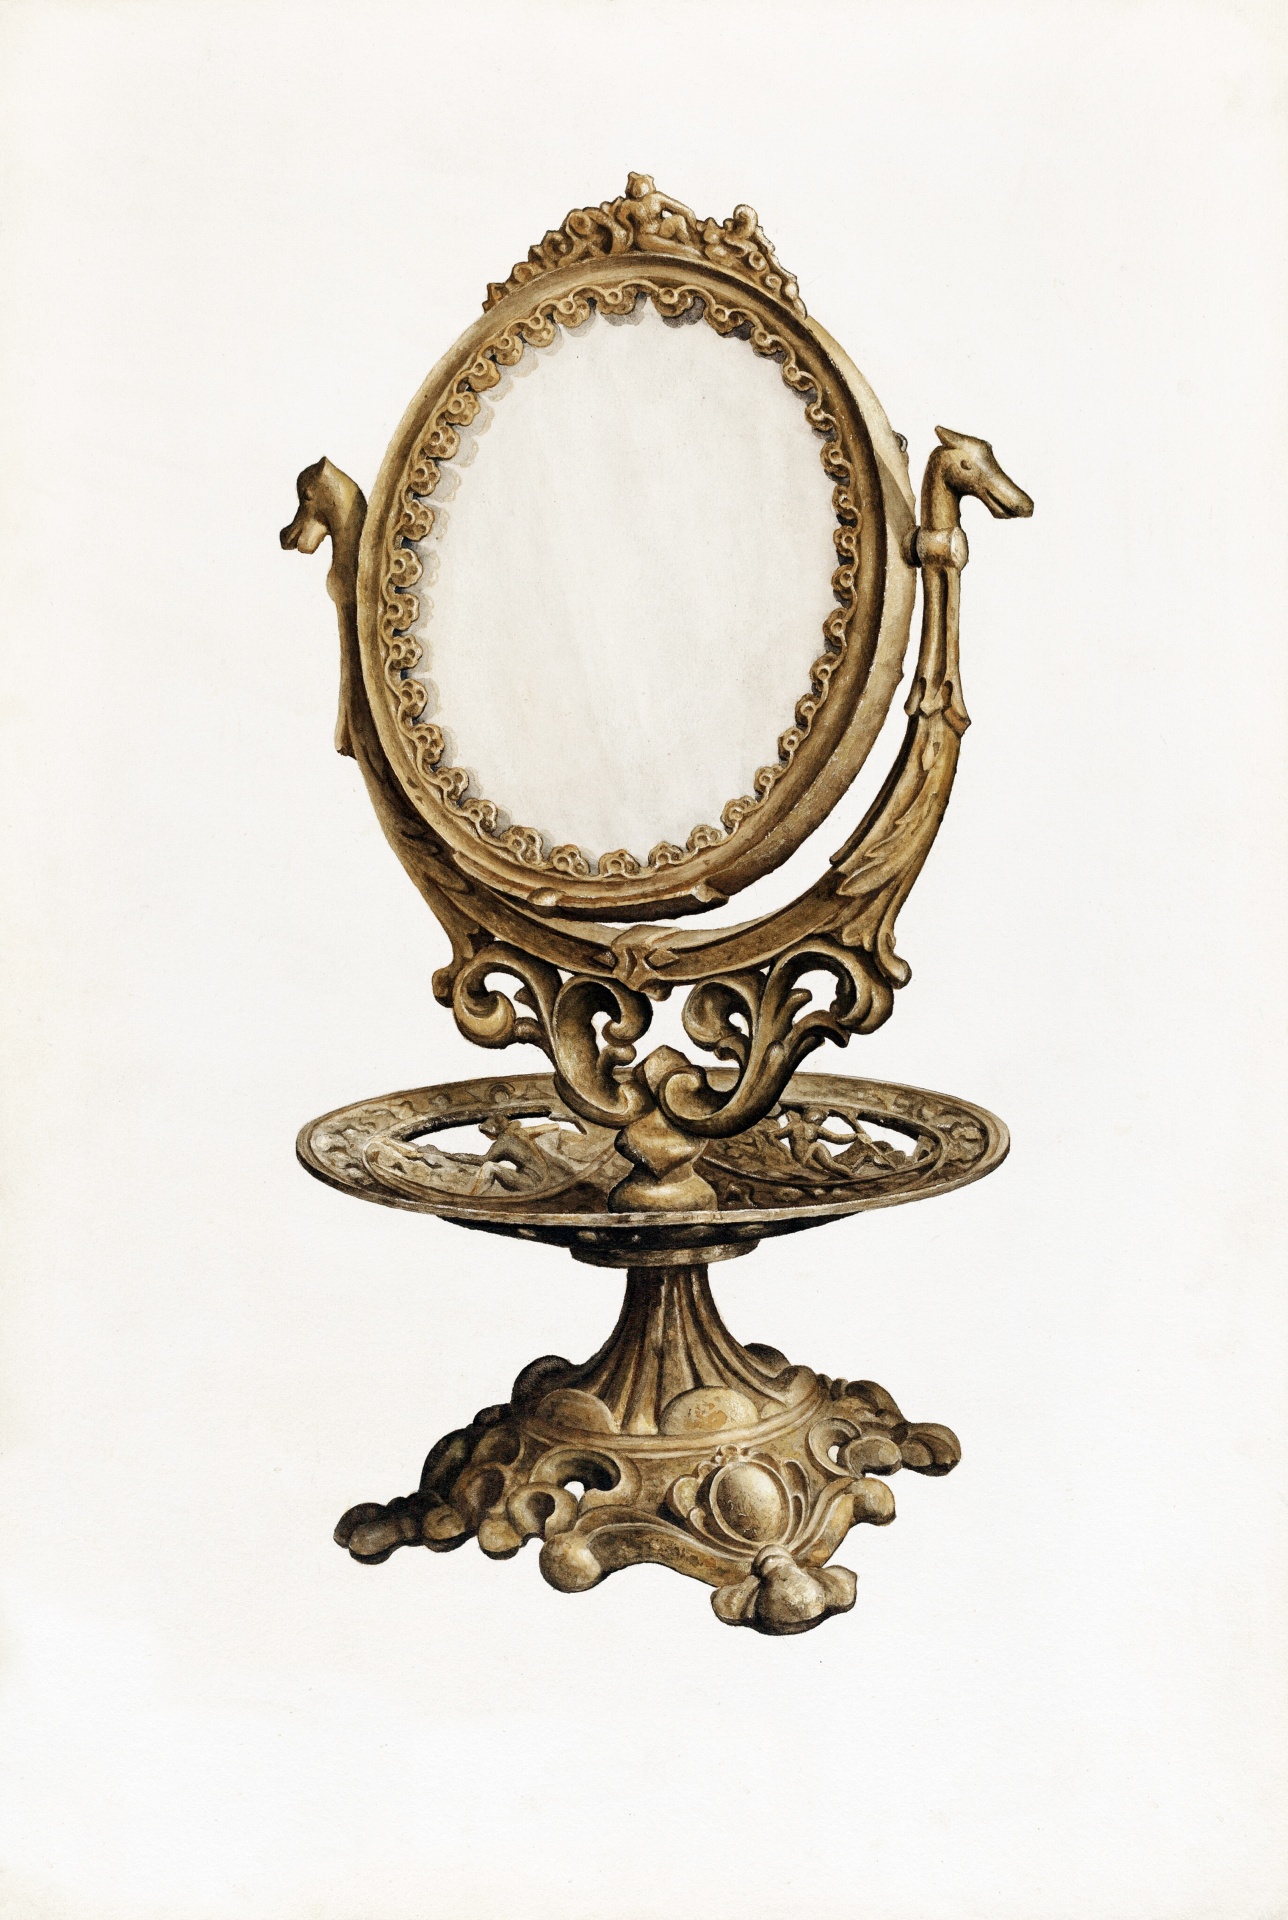 Mirror shell baroque renaissance art nouveau vintage old antique art painting illustration drawing public domain graphic